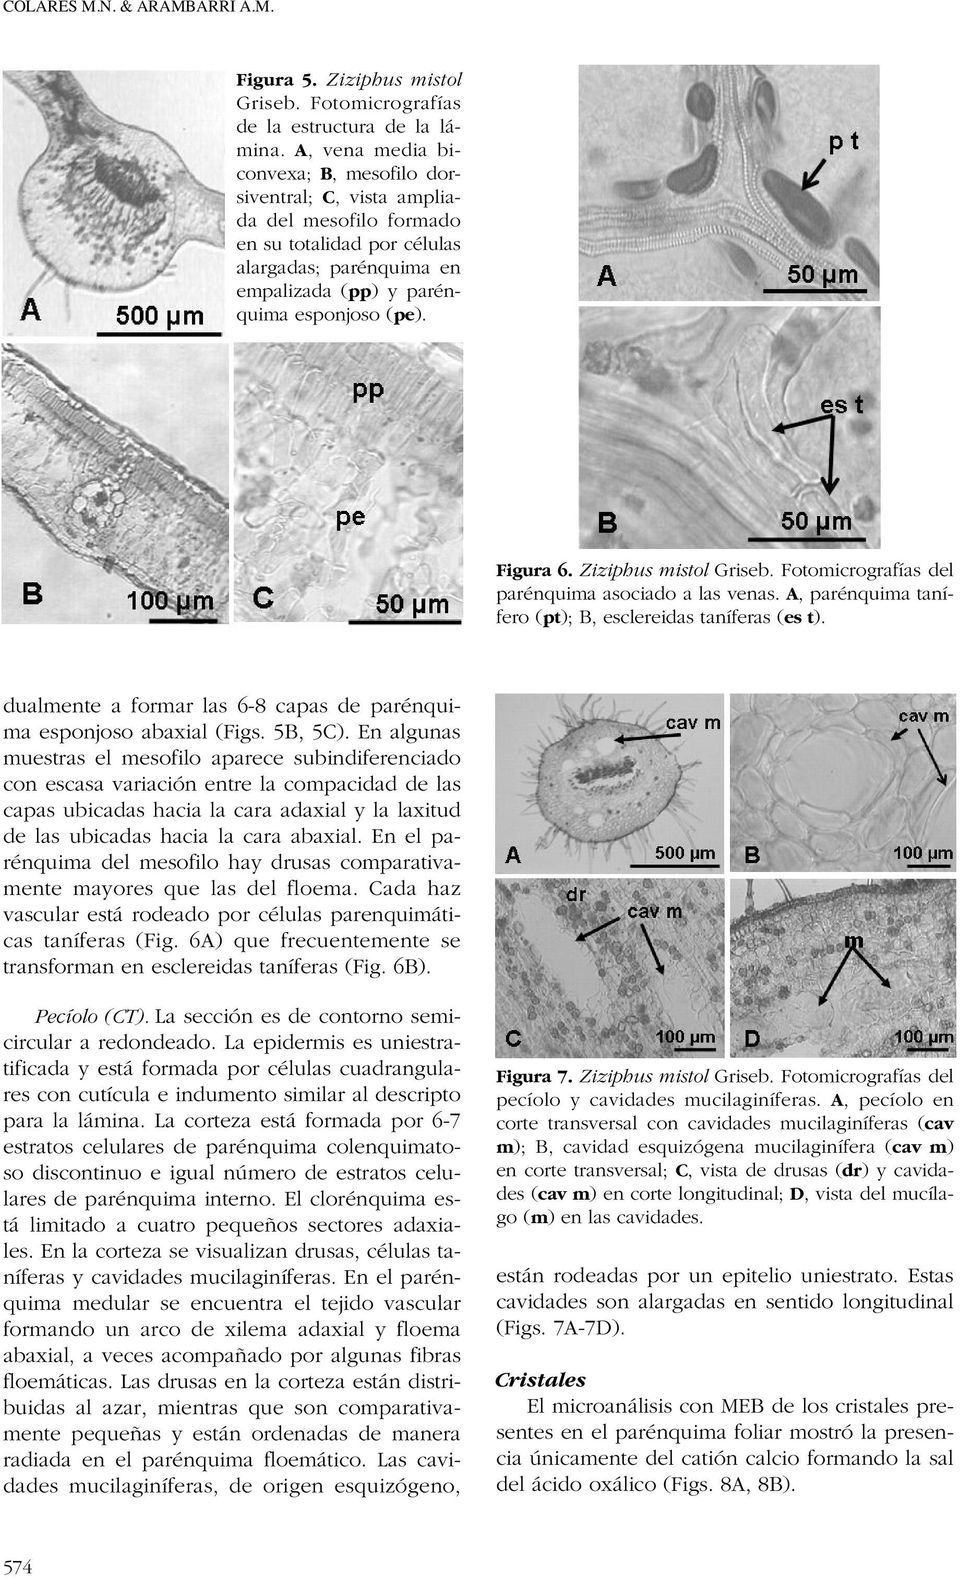 Ziziphus mistol Griseb. Fotomicrografías del parénquima asociado a las venas. A, parénquima tanífero (pt); B, esclereidas taníferas (es t).